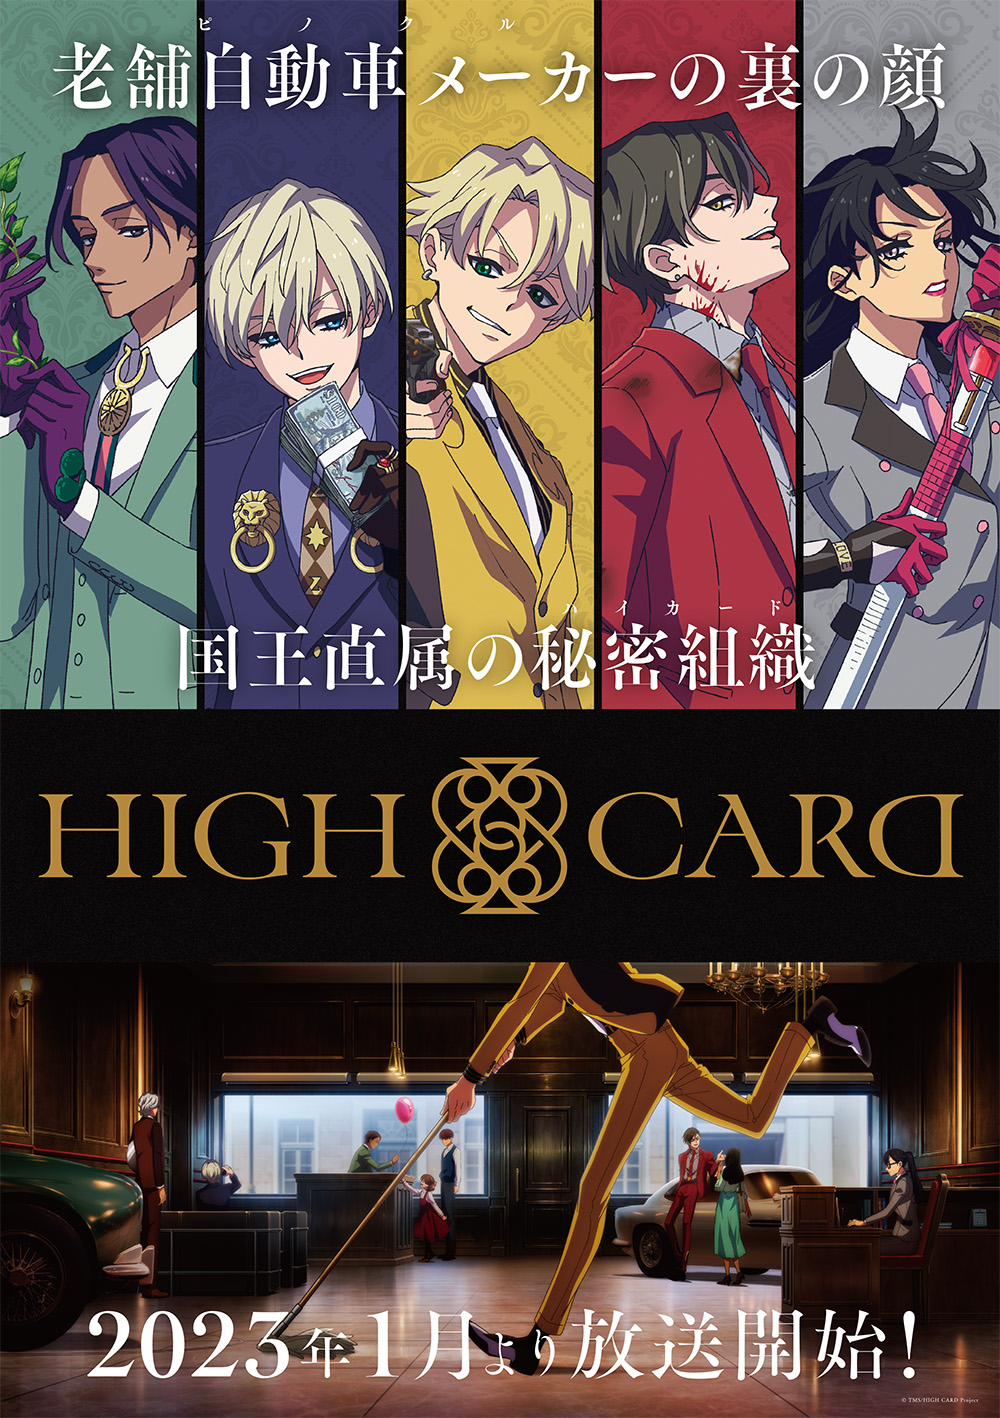 オリジナルtvアニメーション High Card 23年1月放送開始 キービジュアルやpvも公開 株式会社kadokawaのプレスリリース